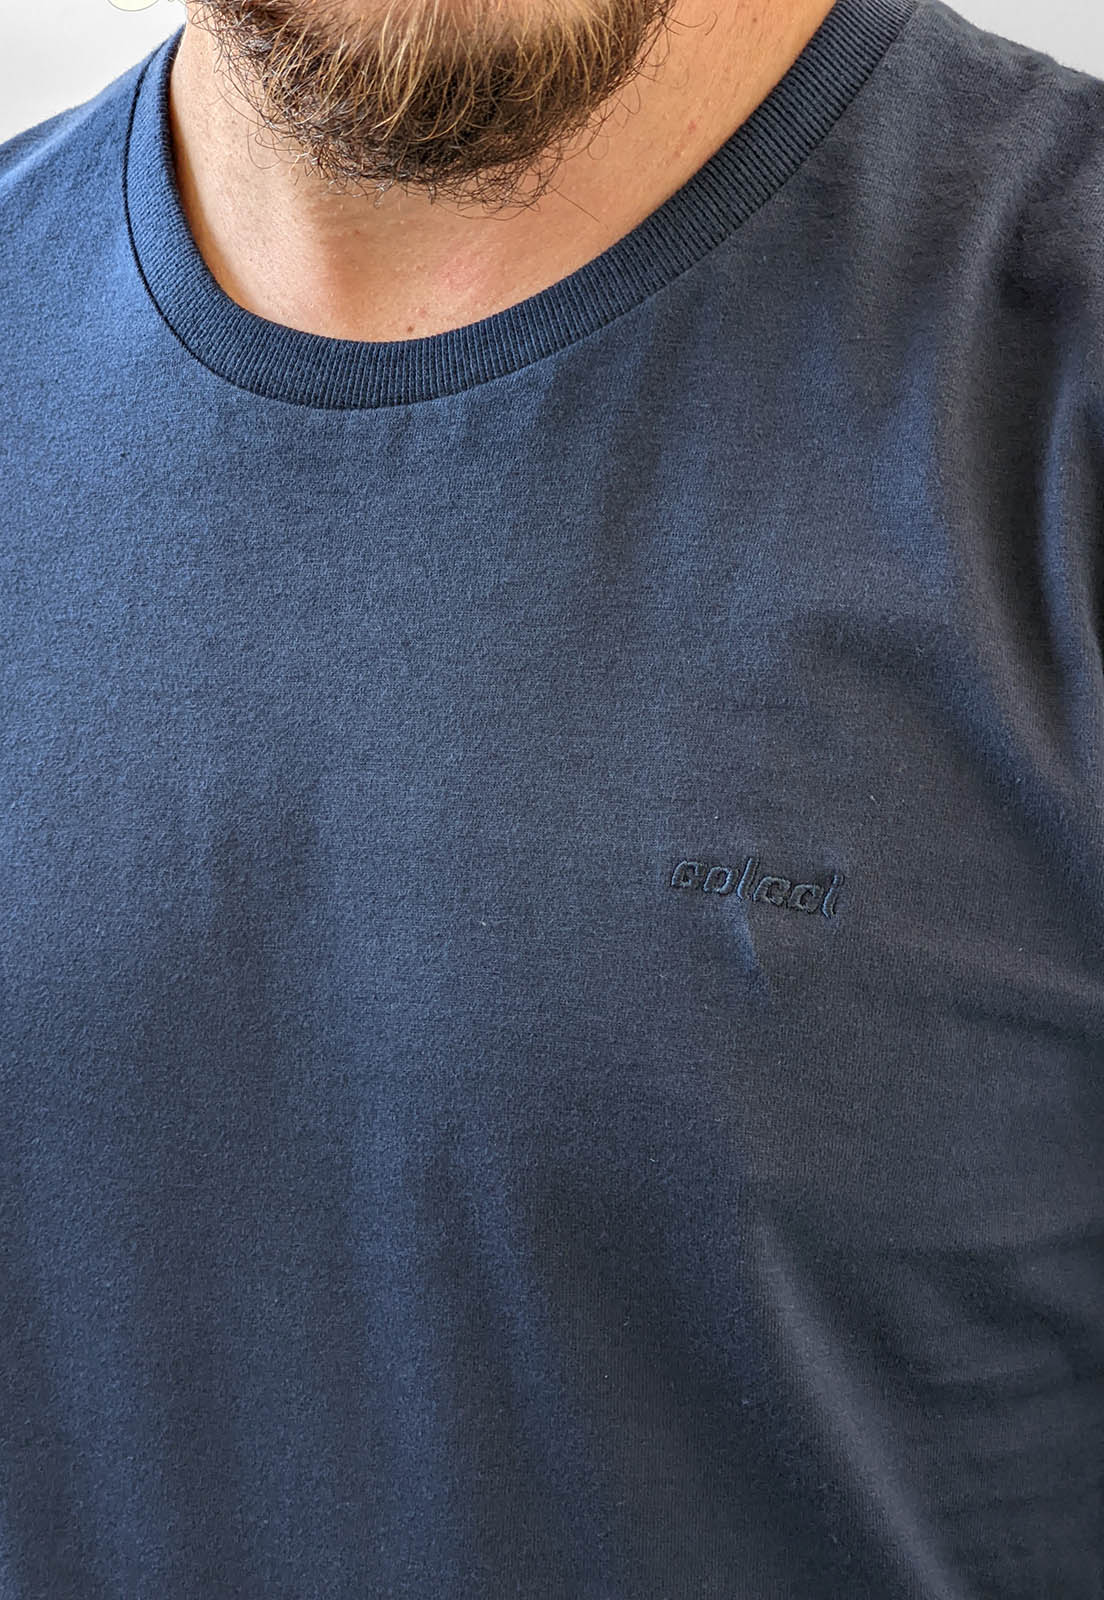 Camiseta Colcci Manga Longa Básica Logo Azul Marinho